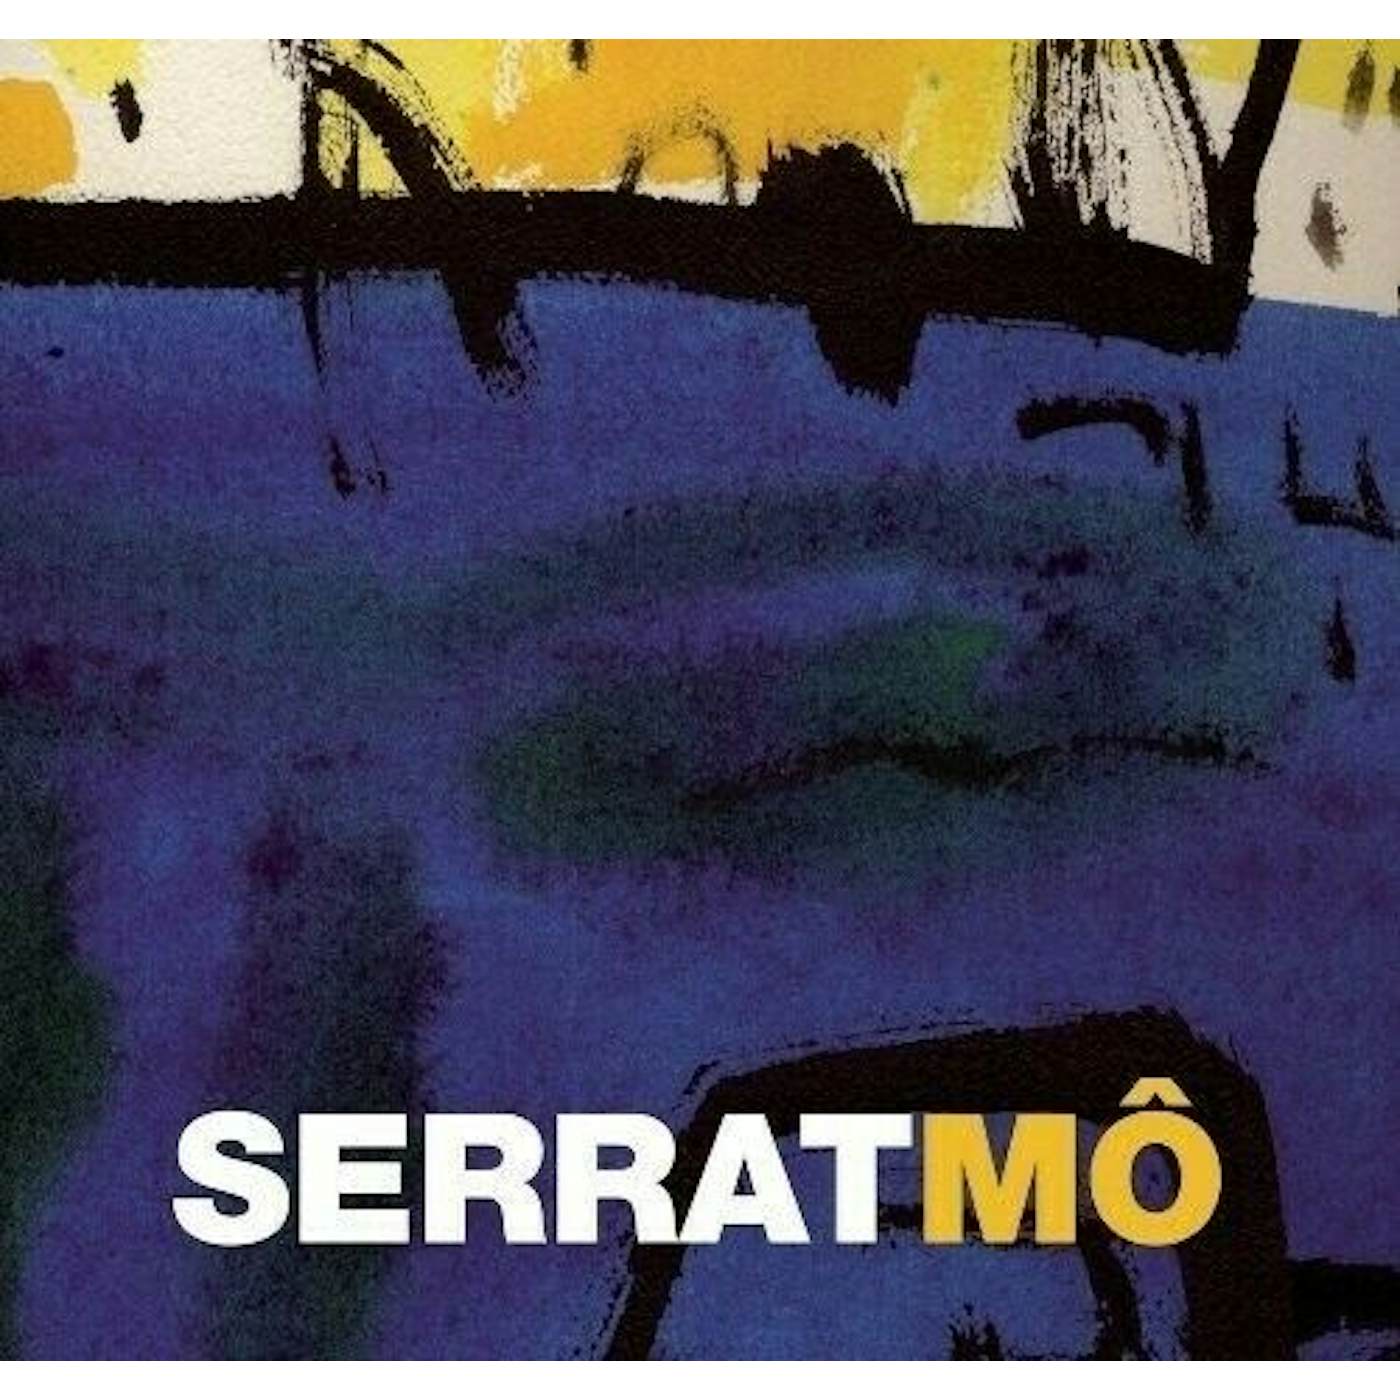 Joan Manuel Serrat MO Vinyl Record